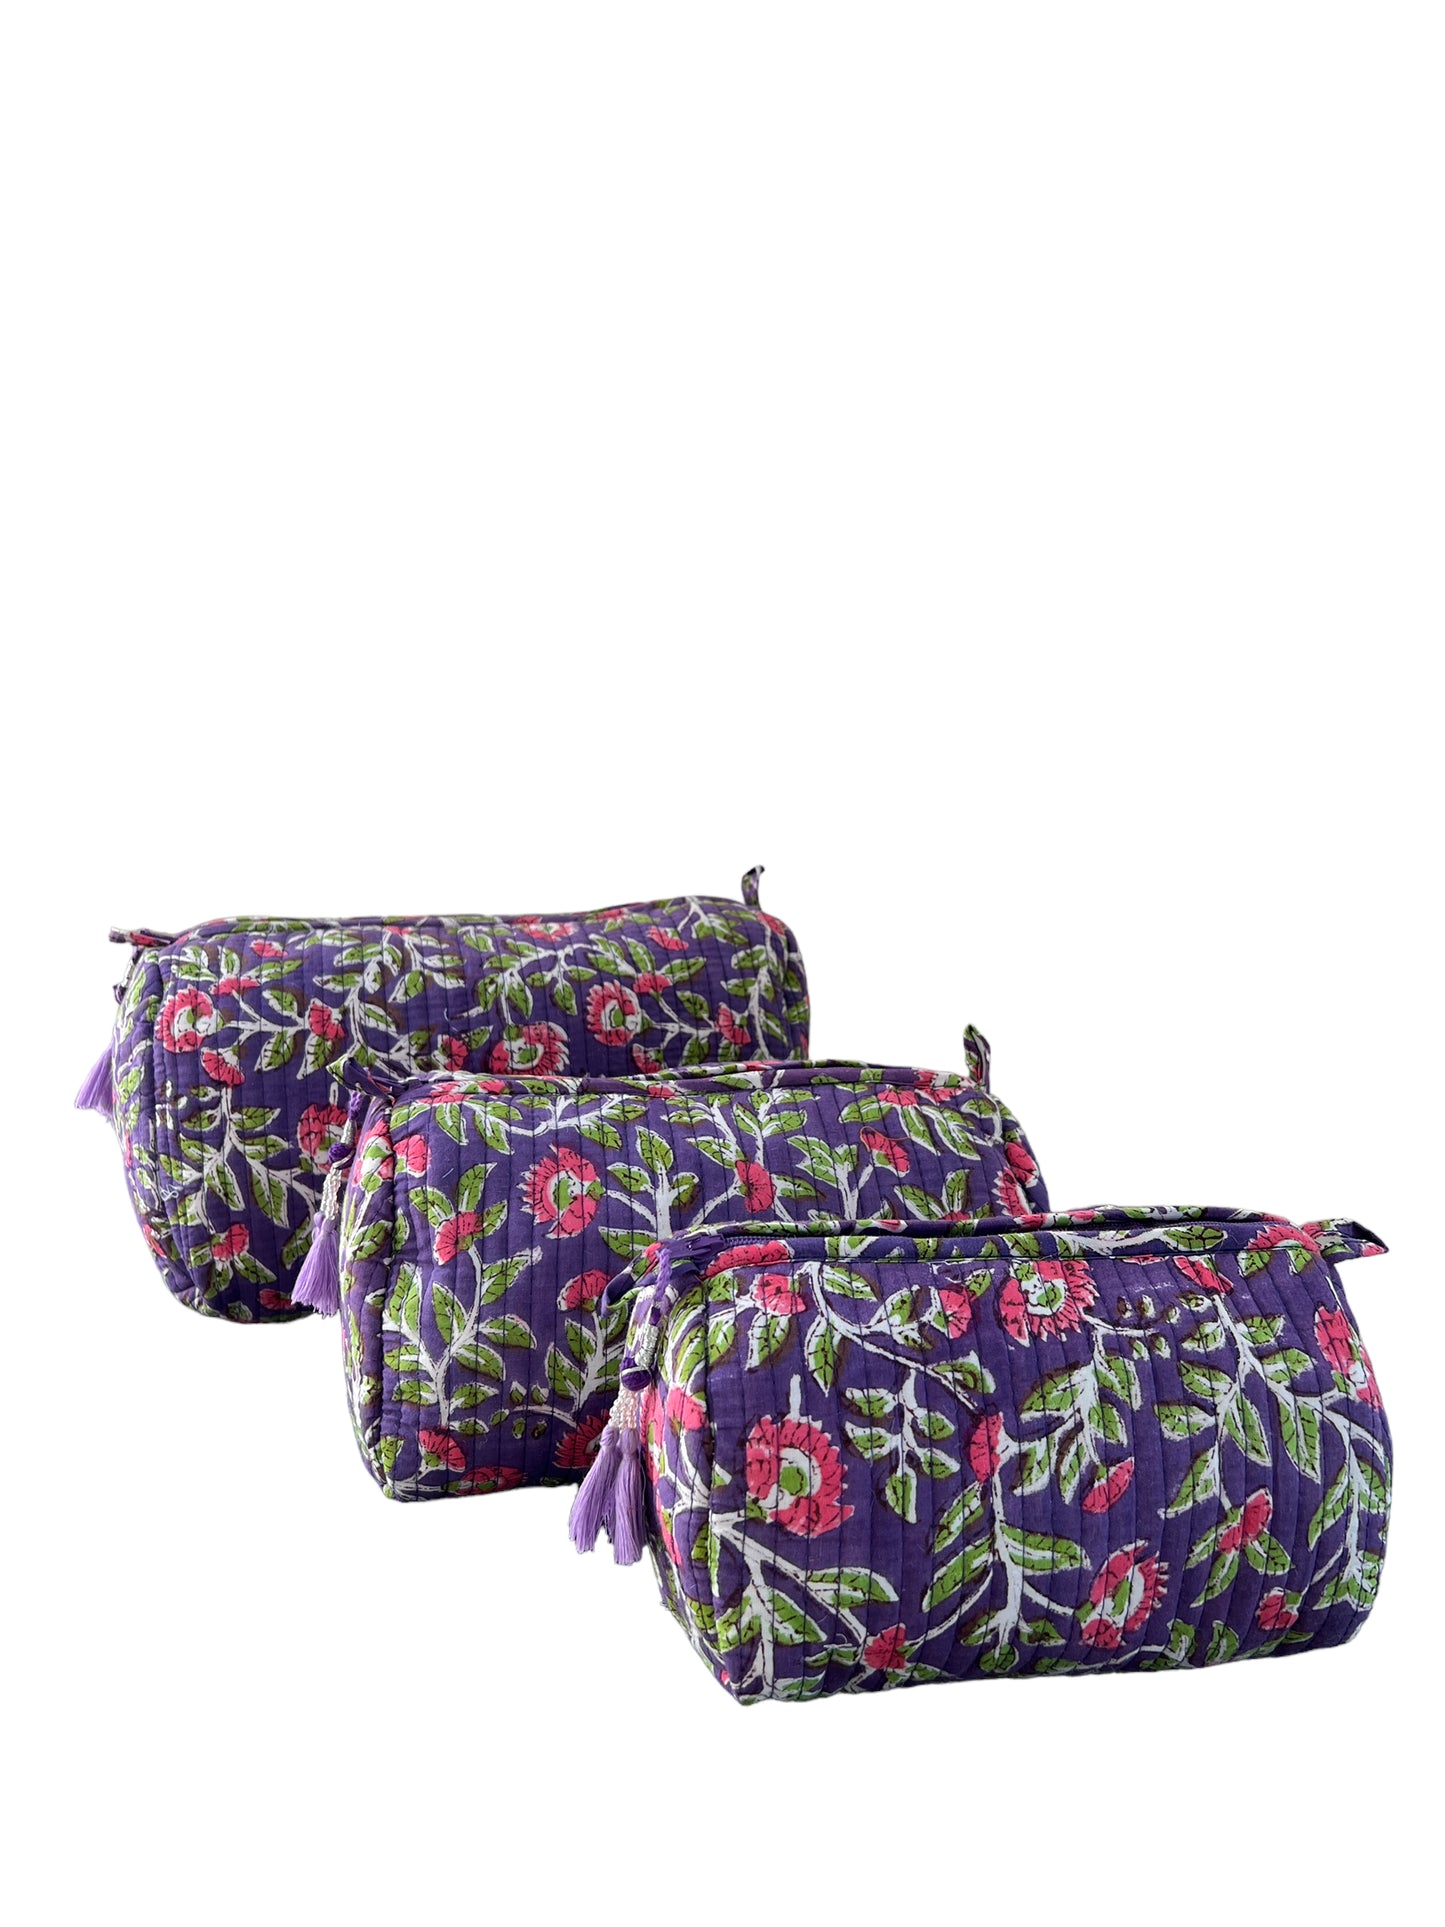 (M089) Make Up Bag Purple Floral